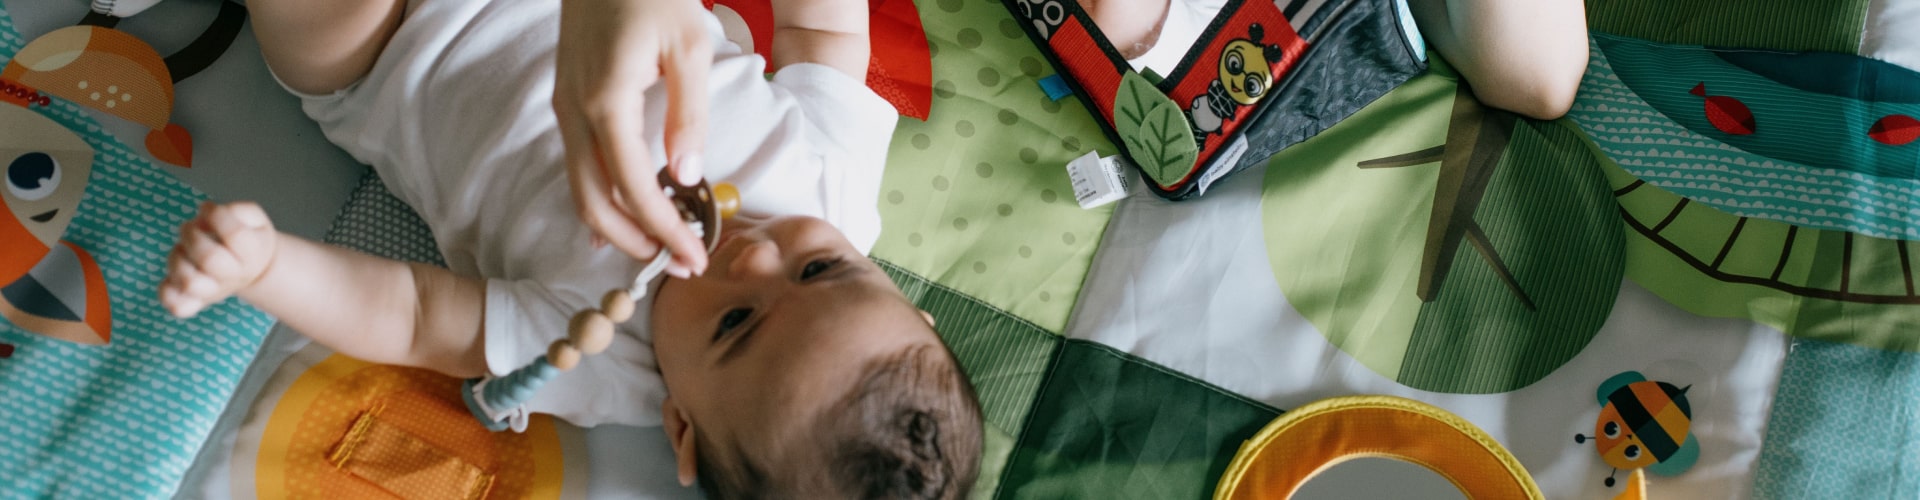 Tapis d'éveil bébé, achat de tapis de jeu pour bébé et enfant : Aubert